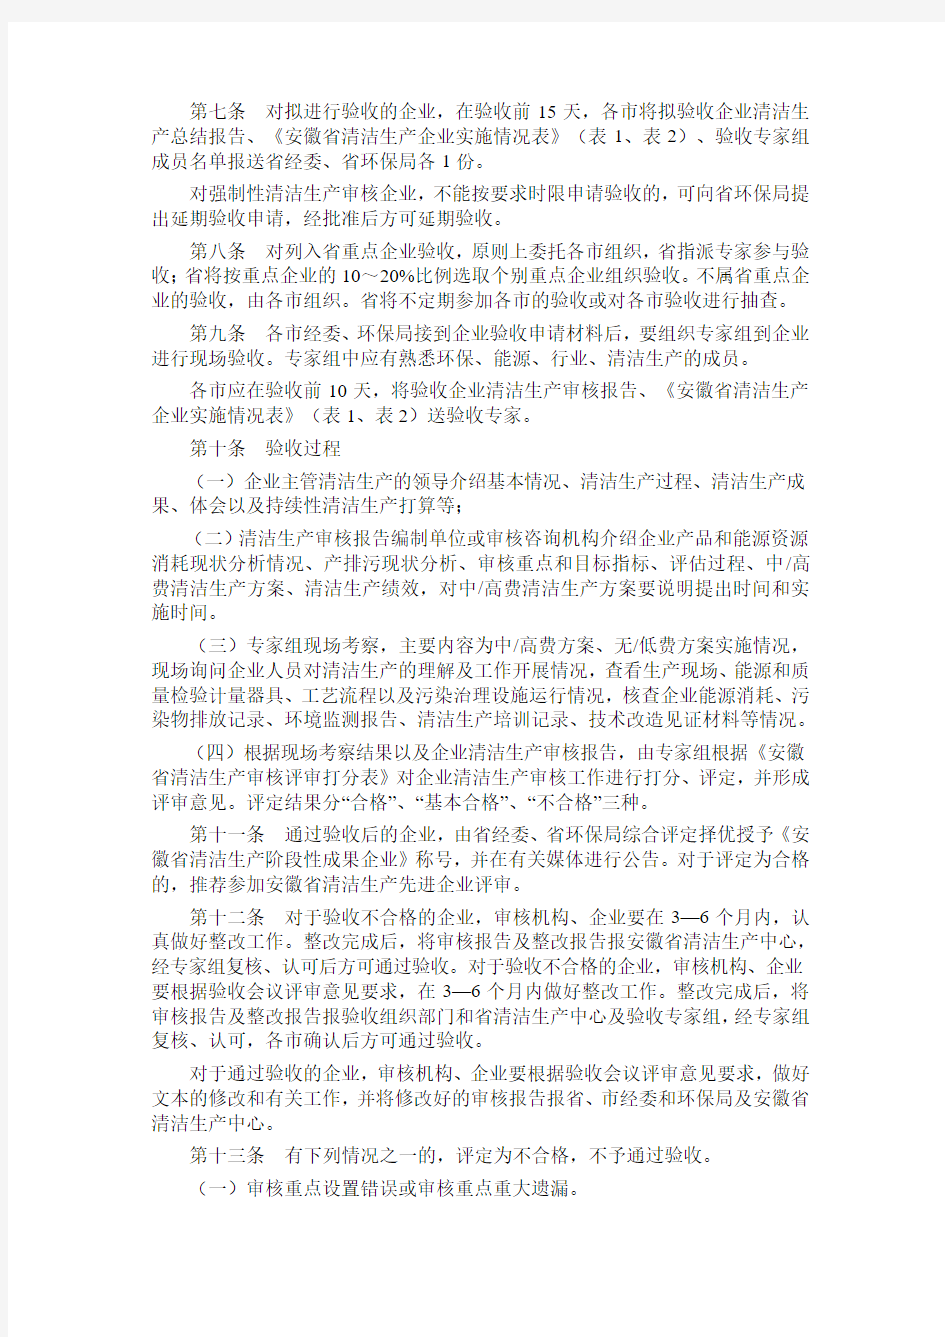 安徽省清洁生产审核验收暂行办法